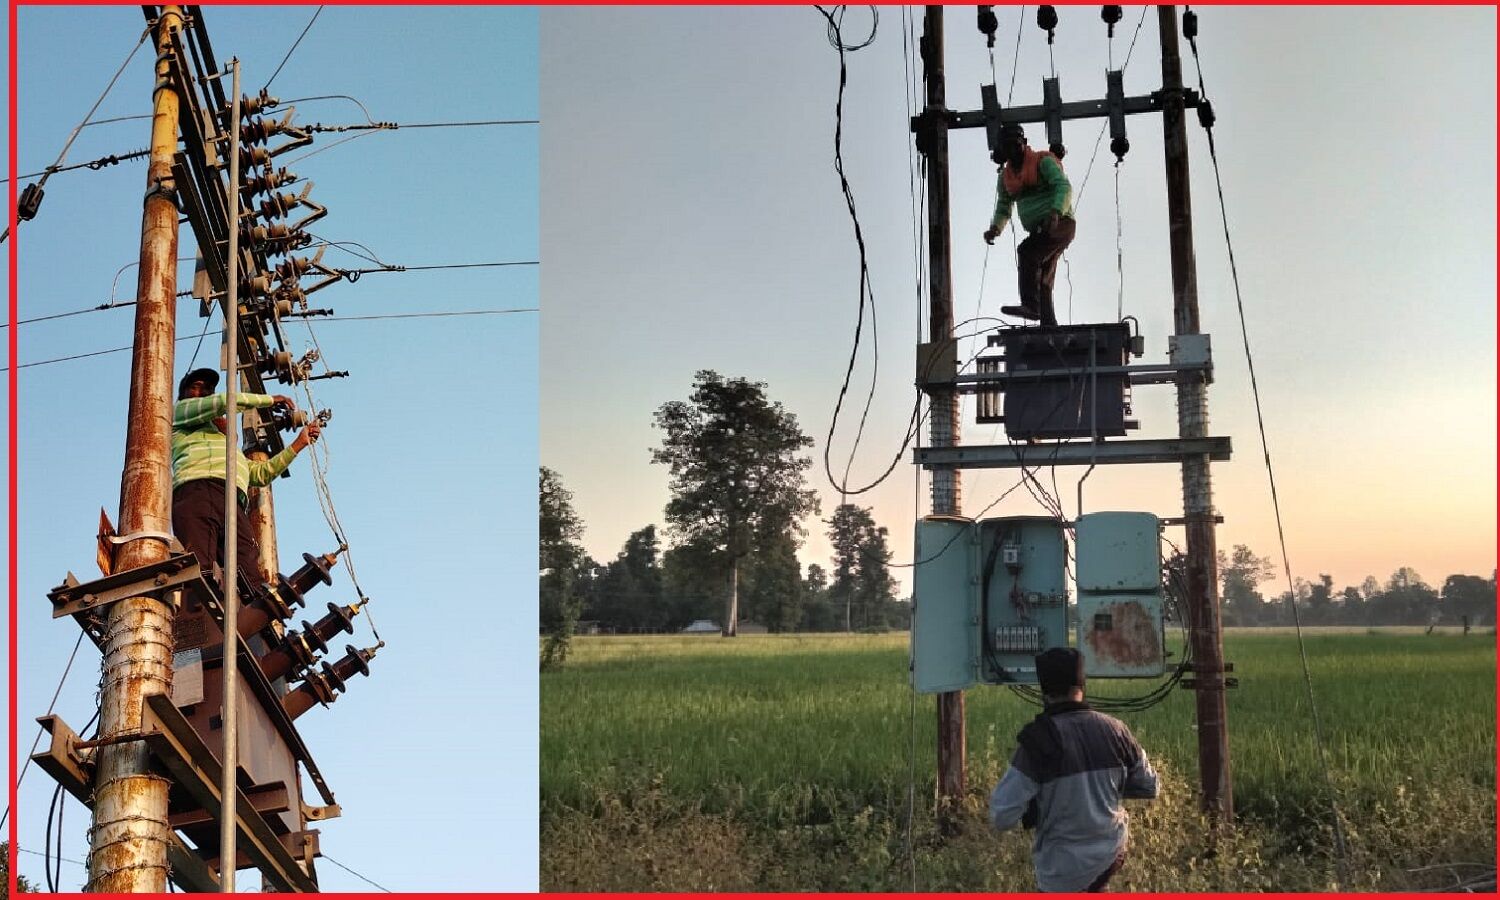 वन विभाग की शह पर विद्युत विभाग का वन गुर्जरों पर कहर : काटे बिजली कनेक्शन, आंदोलन की मिली धमकी तो जोड़ भी दिए